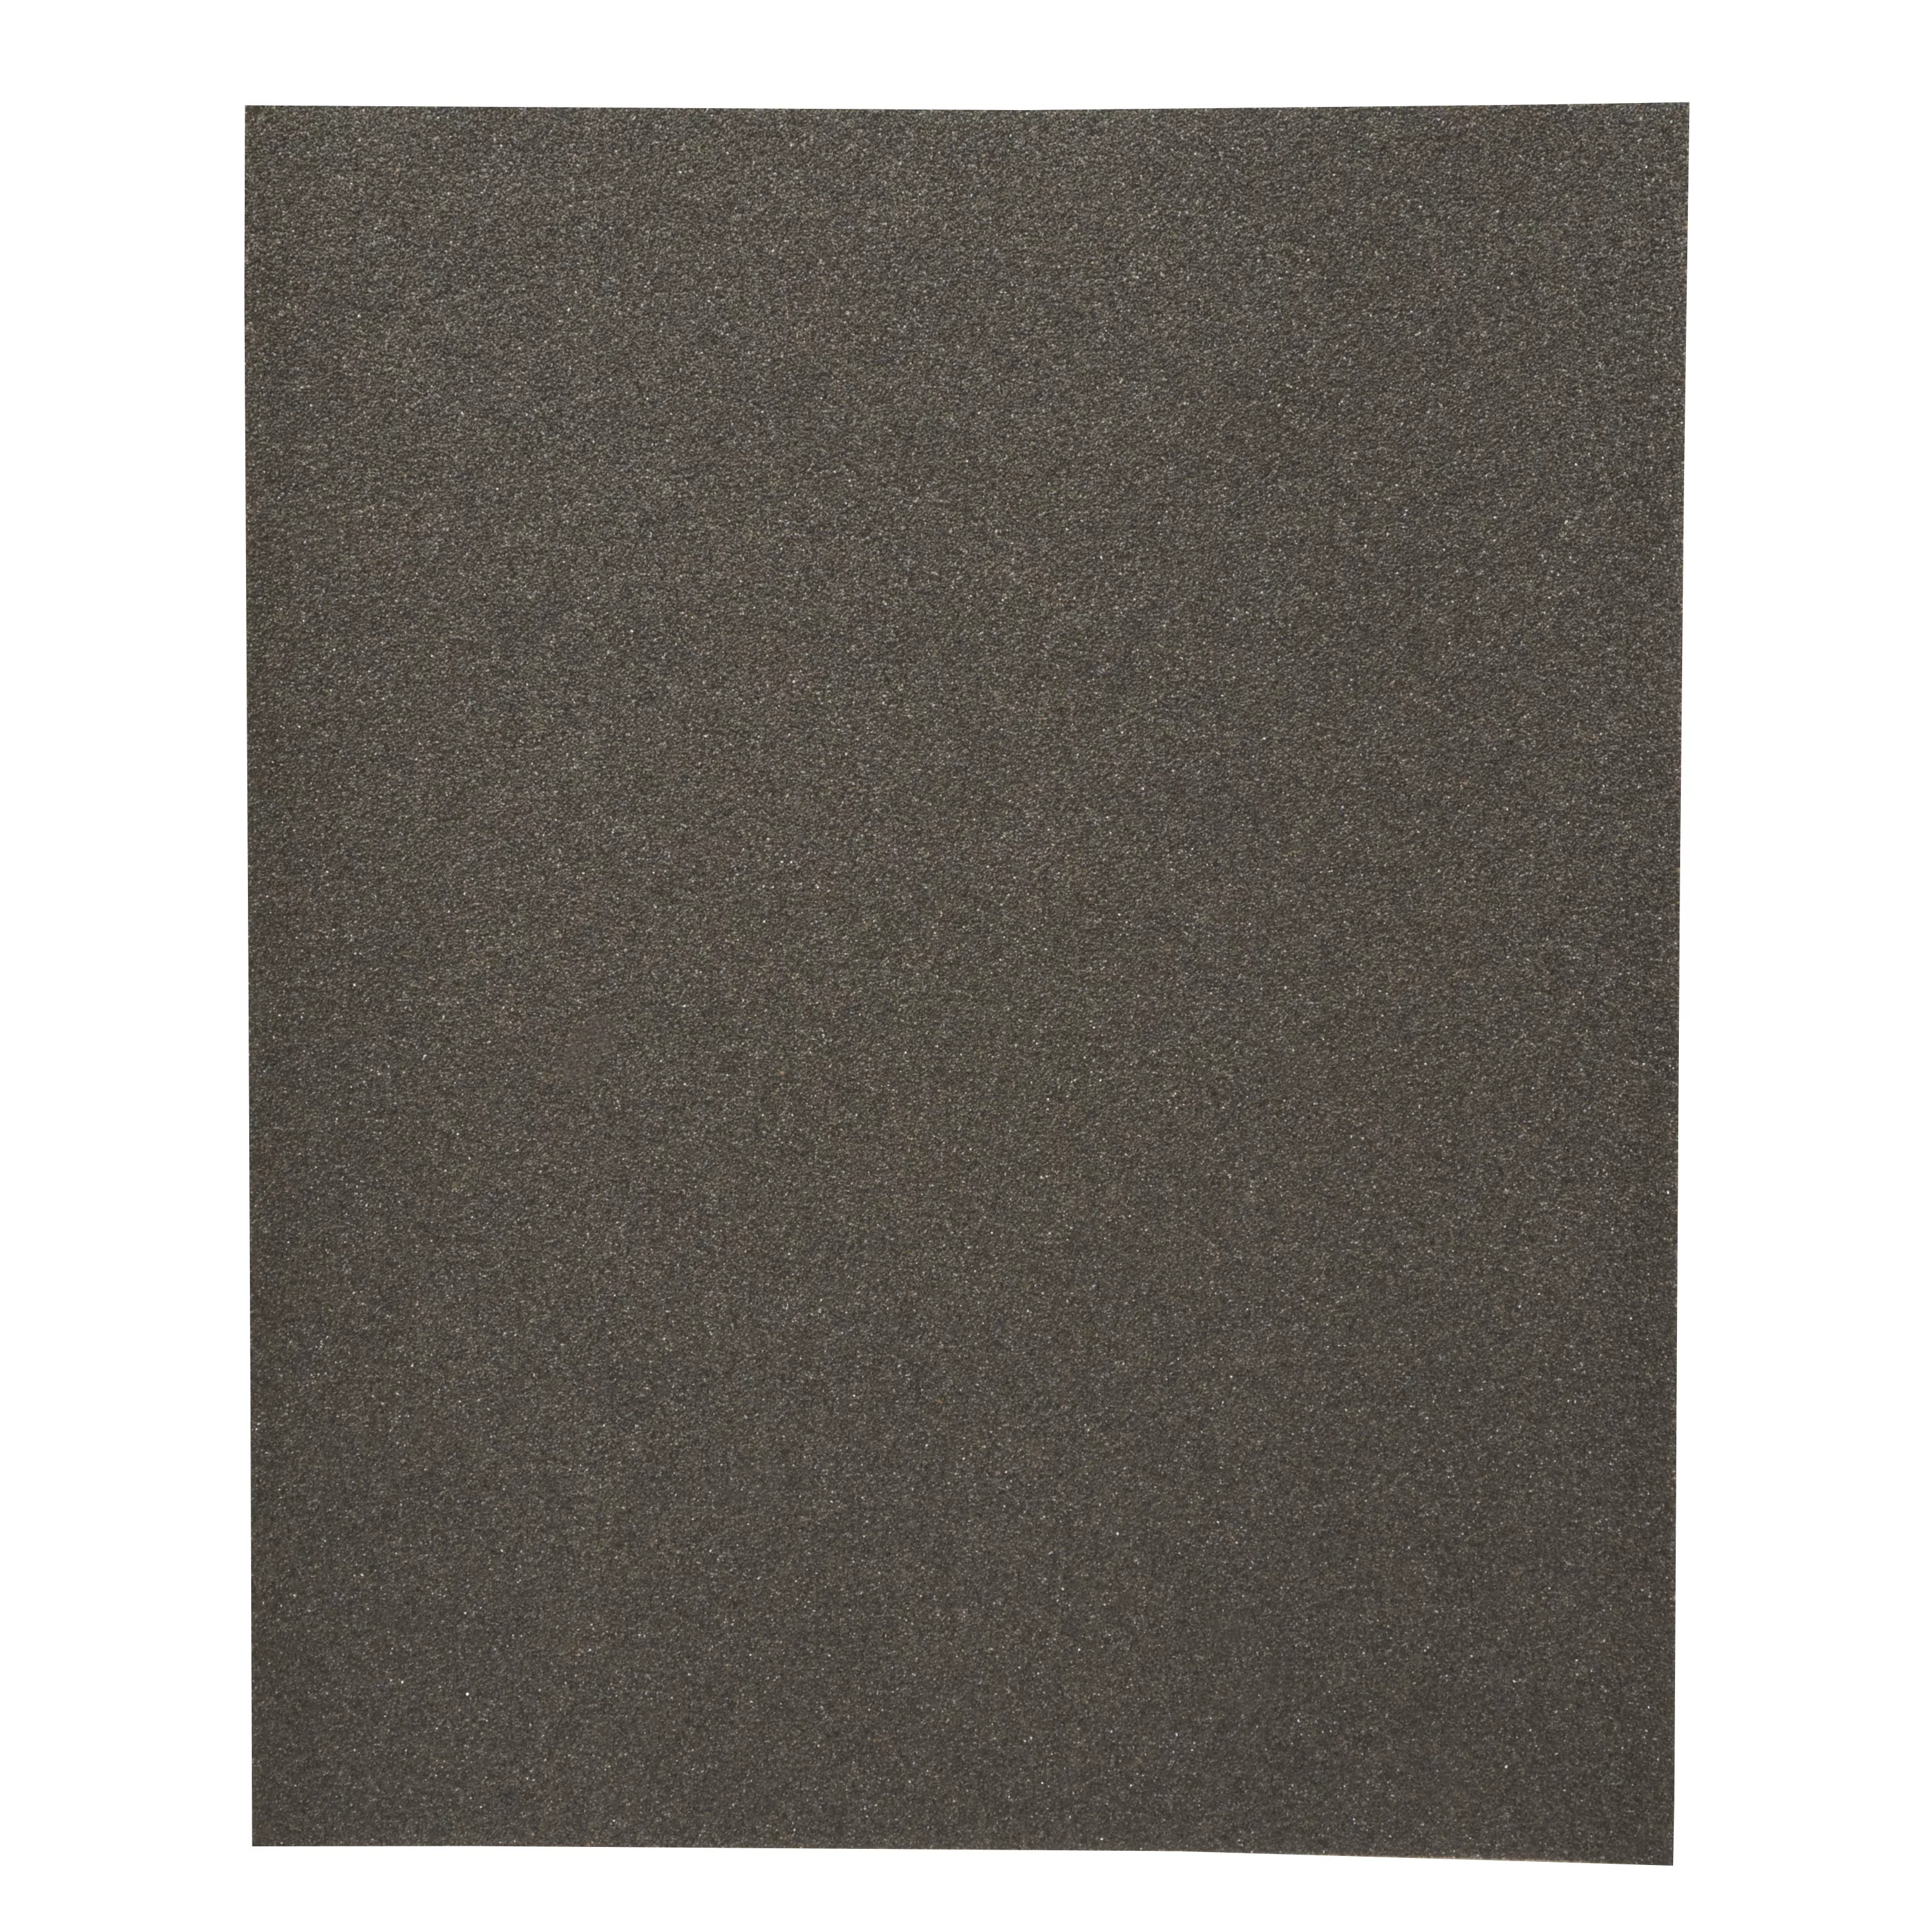 3M™ Wetordry™ Paper Roll 314, P1000, 230 mm x 450 m (9 in x 1476 ft x
3in), ASO